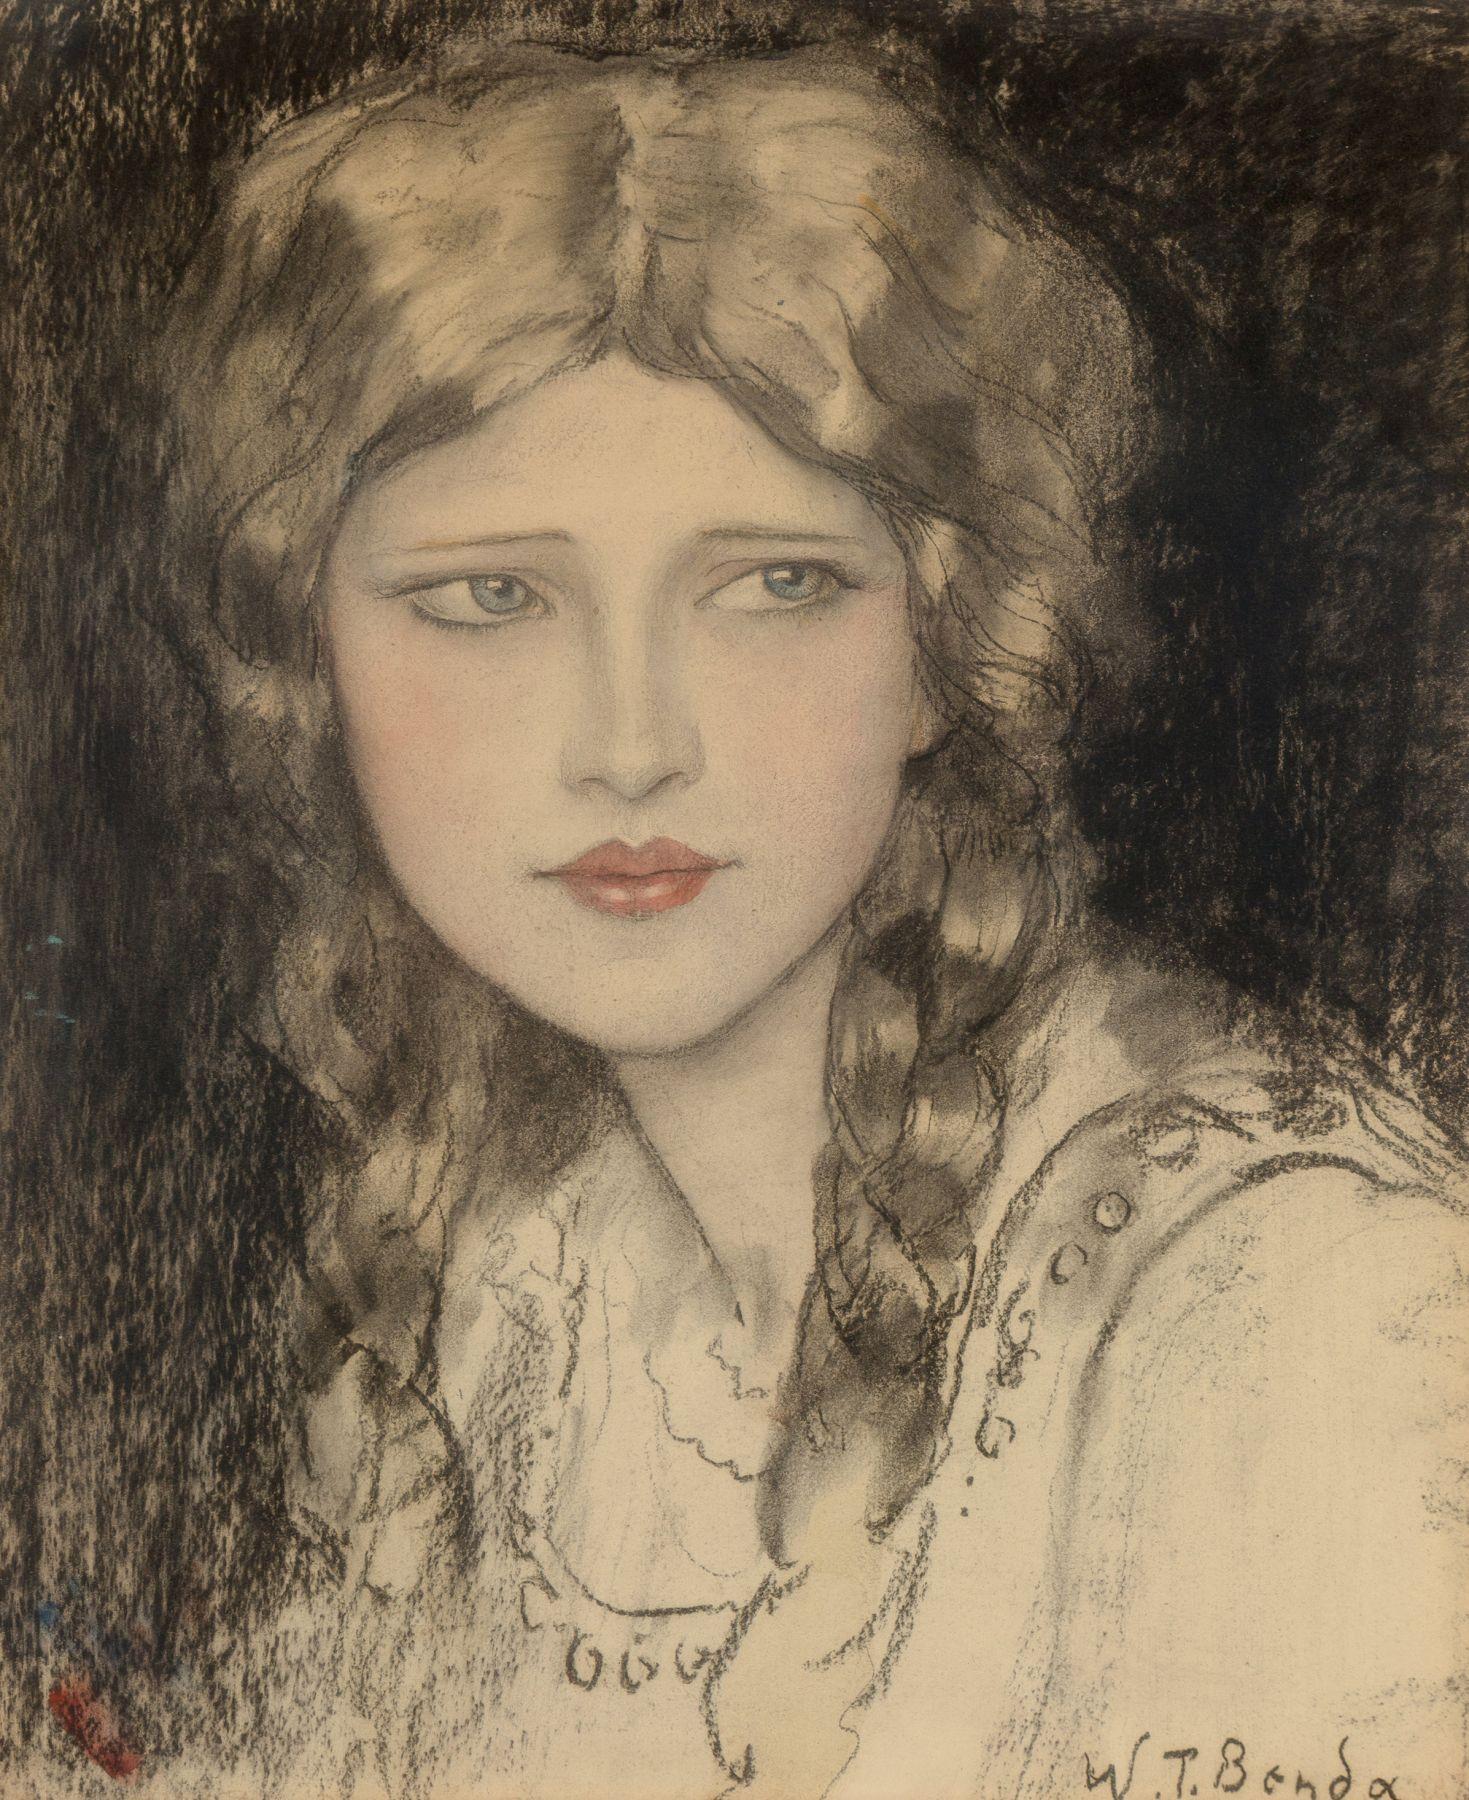 Wladyslaw T. Benda Portrait - Girl with Braids